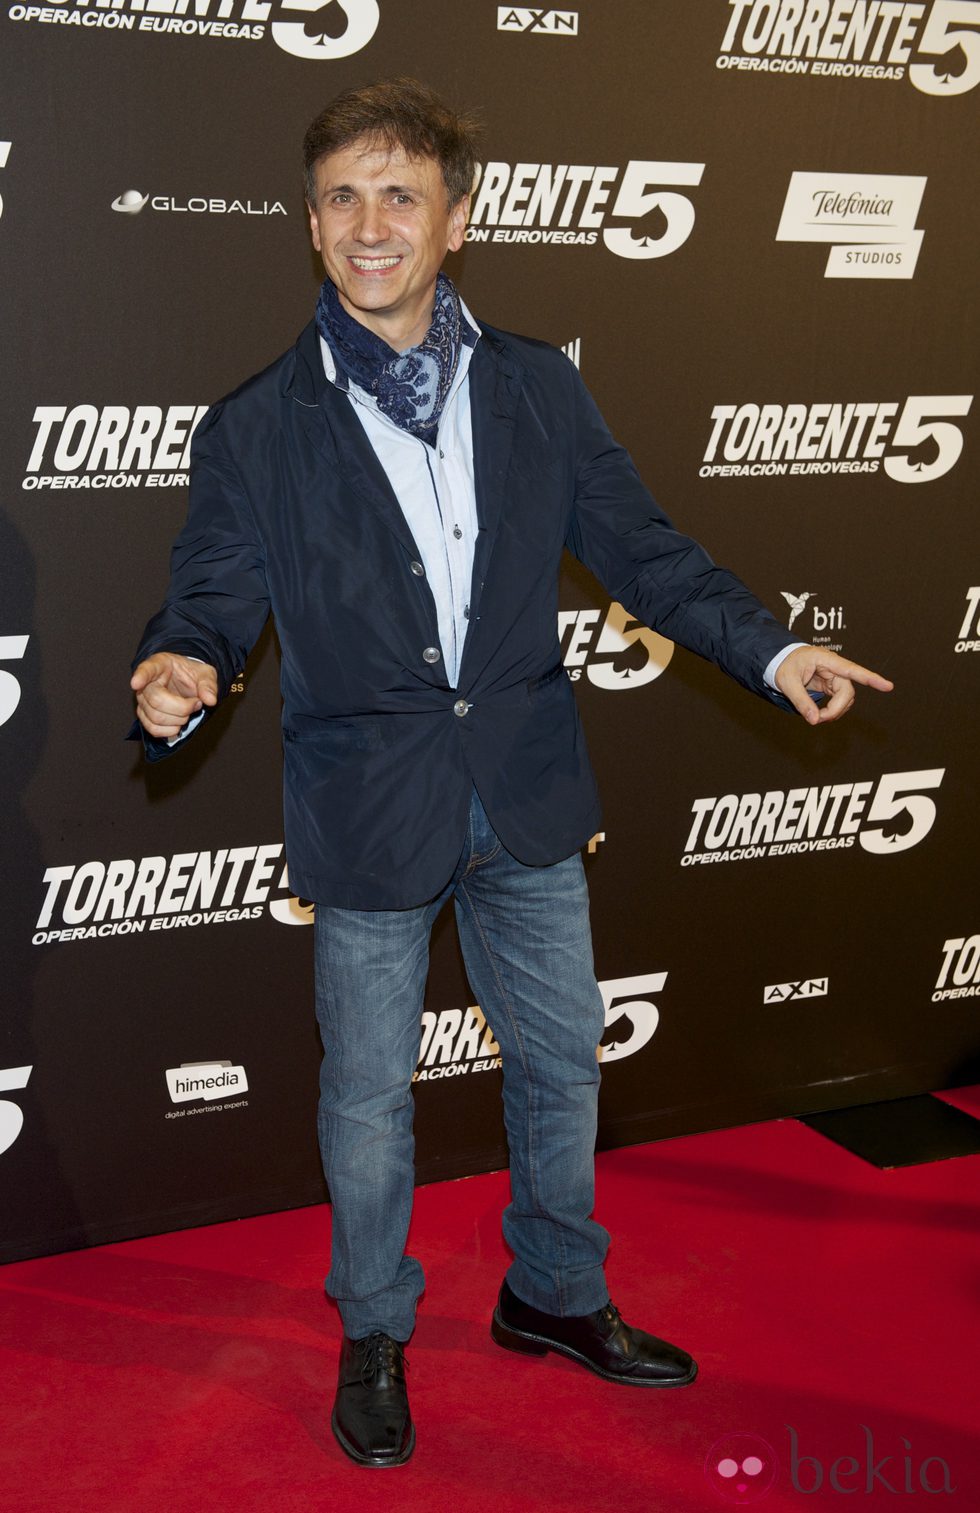 José Mota en el estreno de 'Torrente 5: Operación Eurovegas'